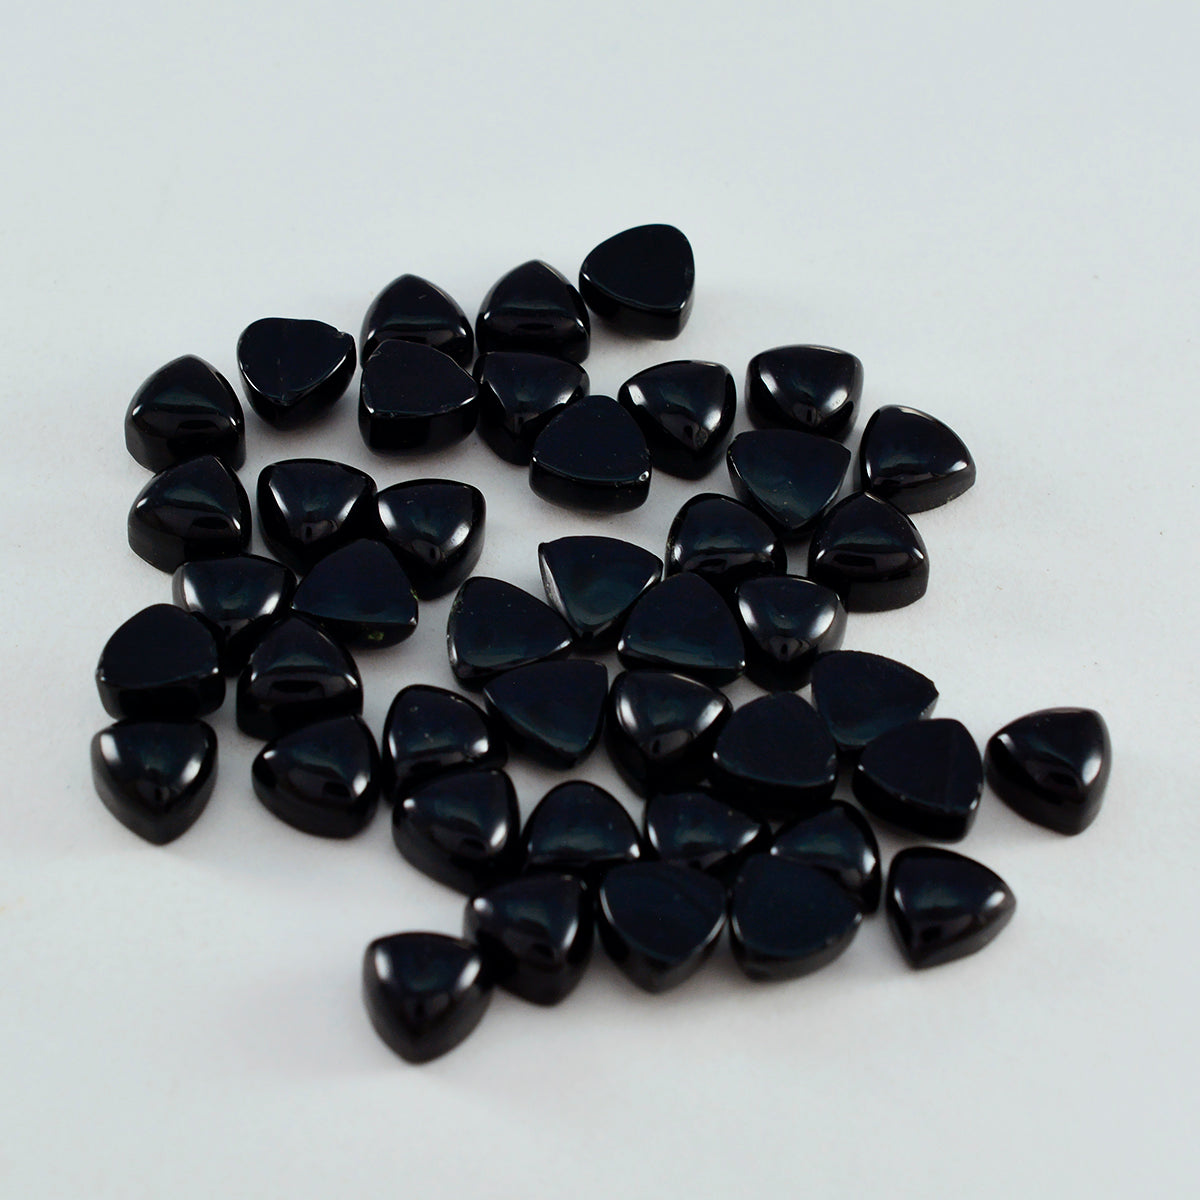 Riyogems 1 Stück schwarzer Onyx-Cabochon, 4 x 4 mm, Billionenform, erstaunliche Qualität, lose Edelsteine